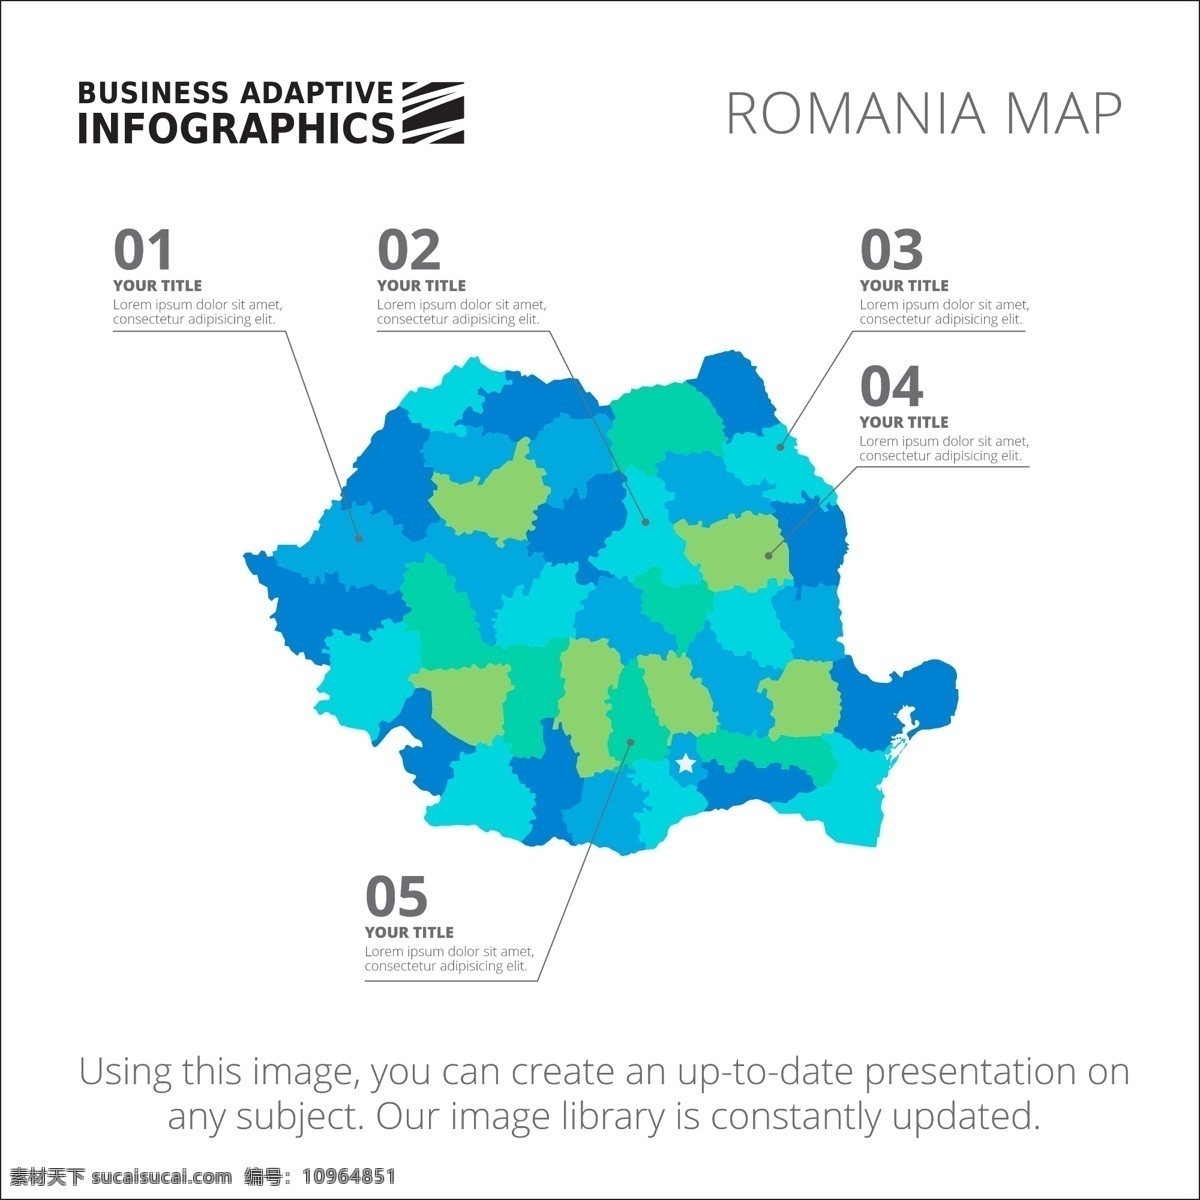 图表模板设计 图表 业务 地图 图形 模板 数字 信息 数据 要素 信息图表元素 色彩 商业图表 infography 图表模板 图形元素